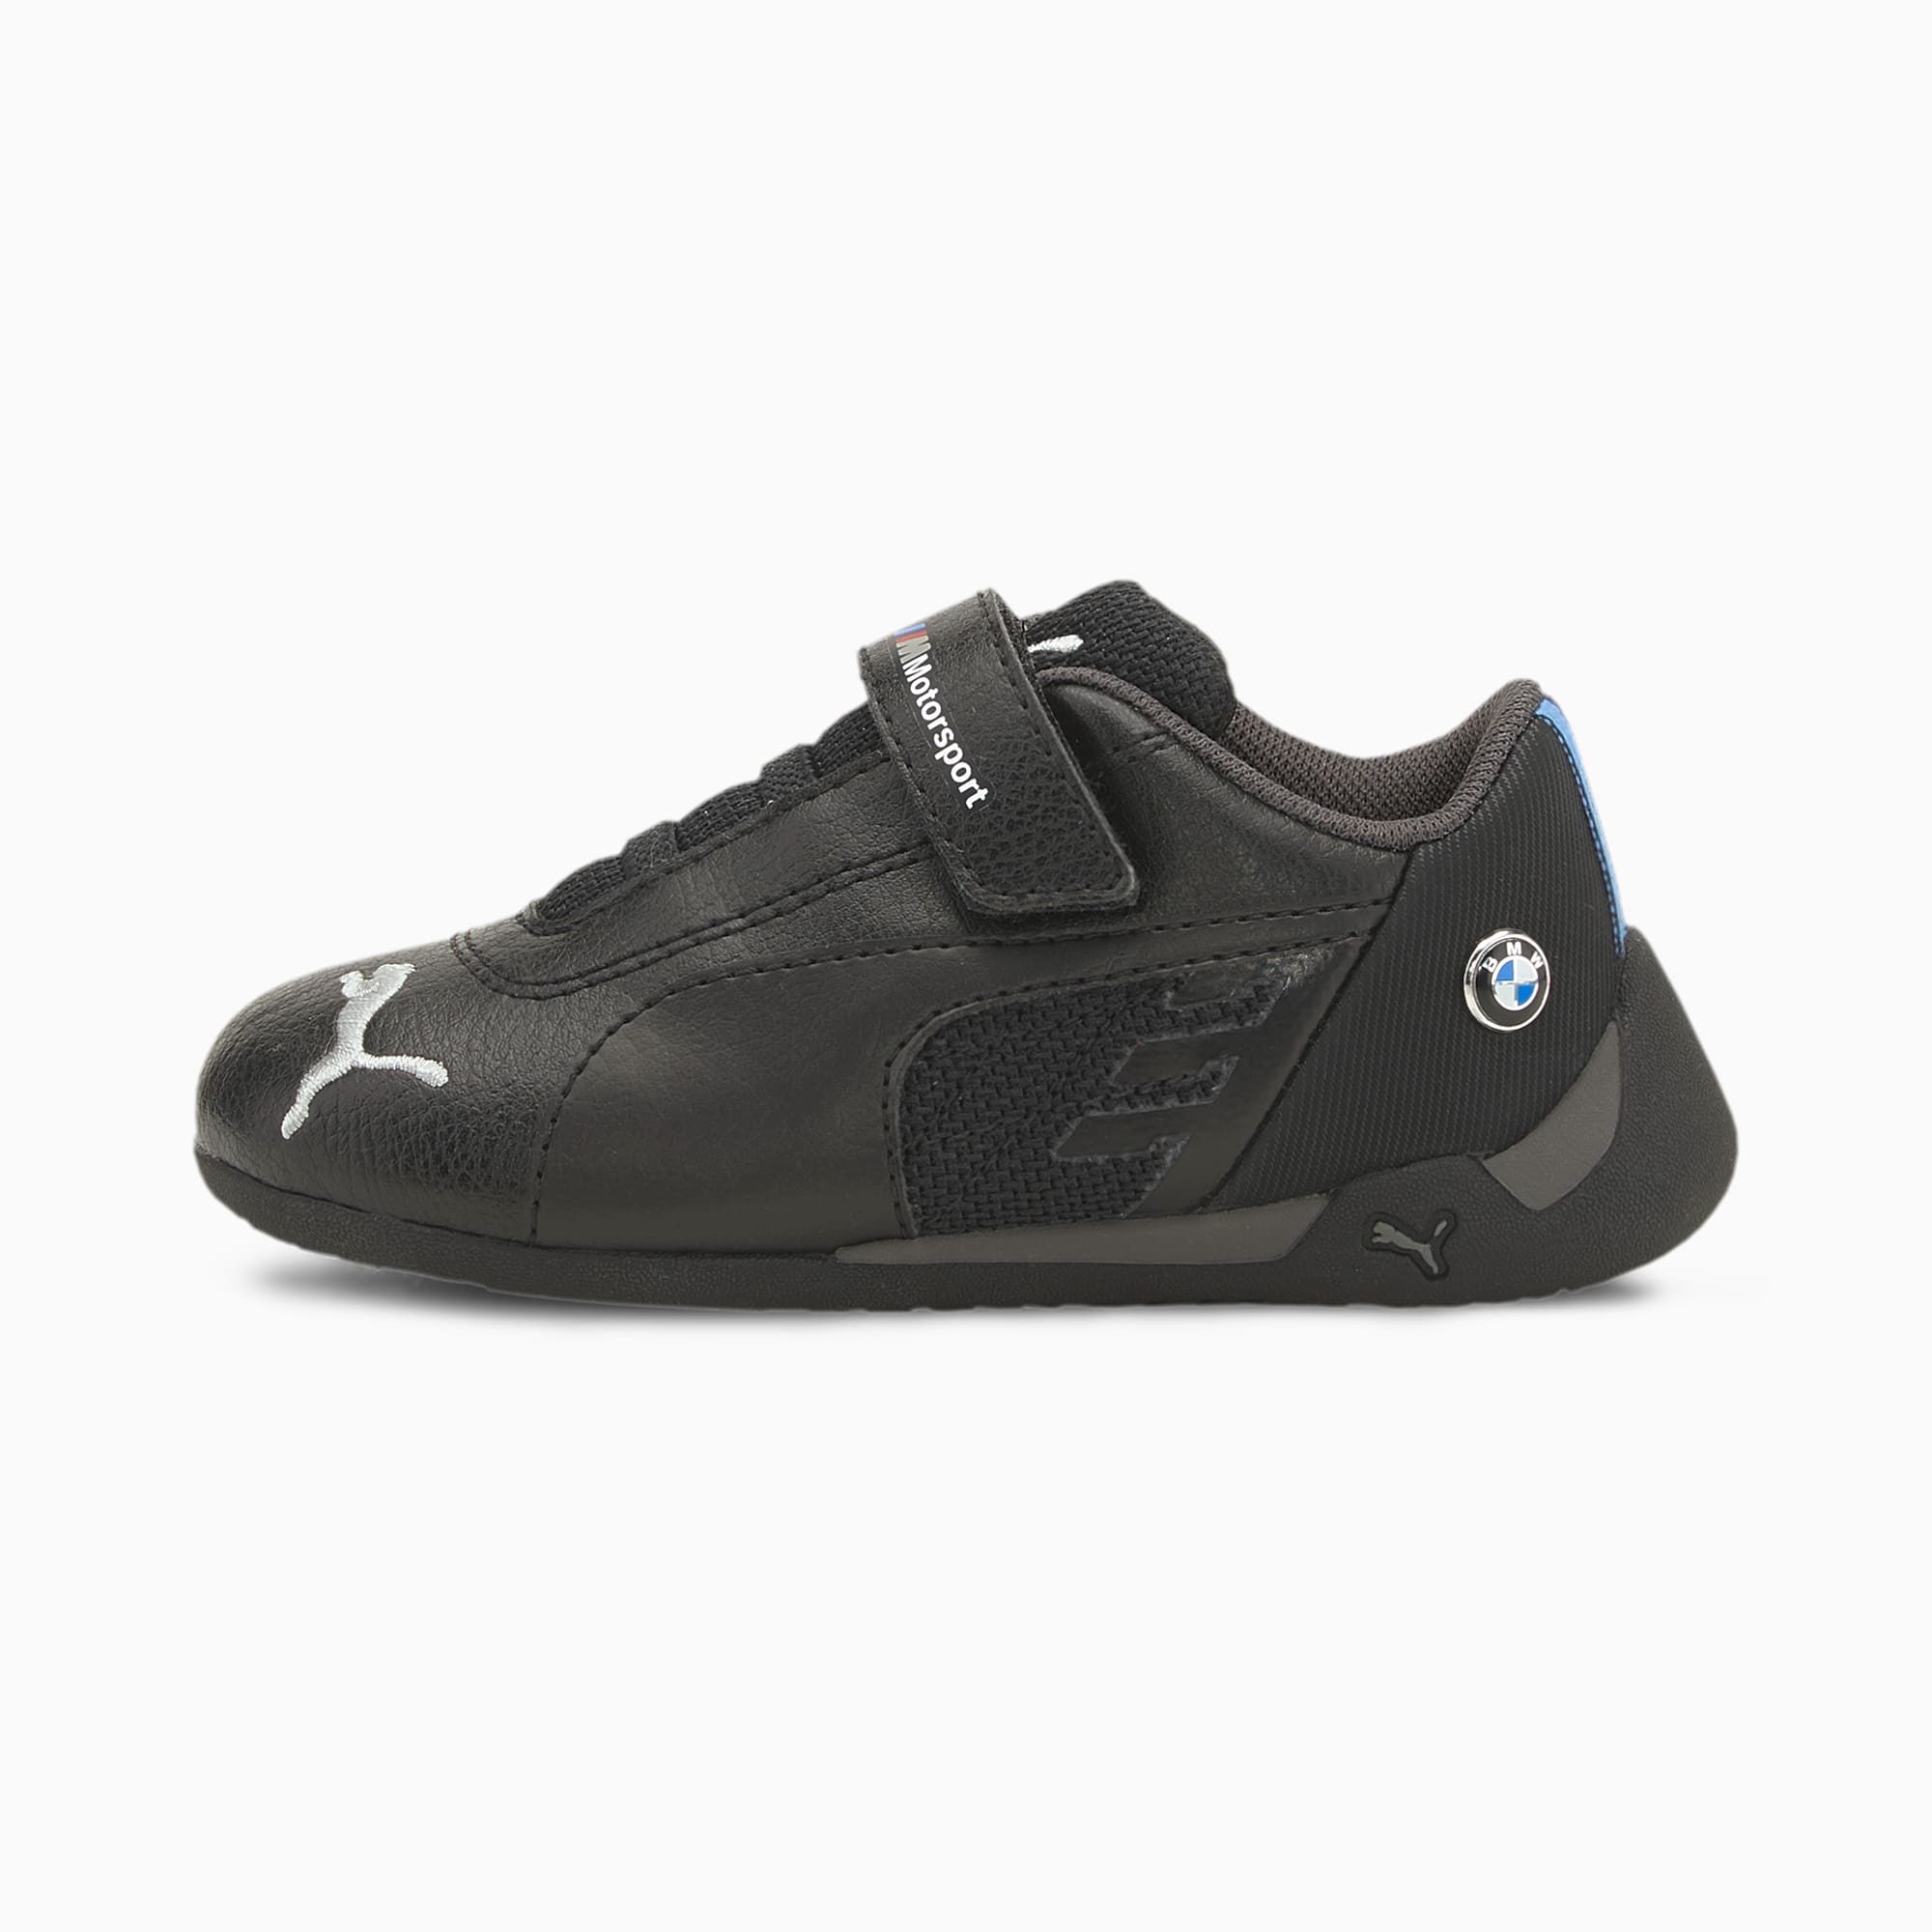 PUMA Chaussures BMW M Motorsport R-Cat V bébé, Noir, Taille 21, Chaussures